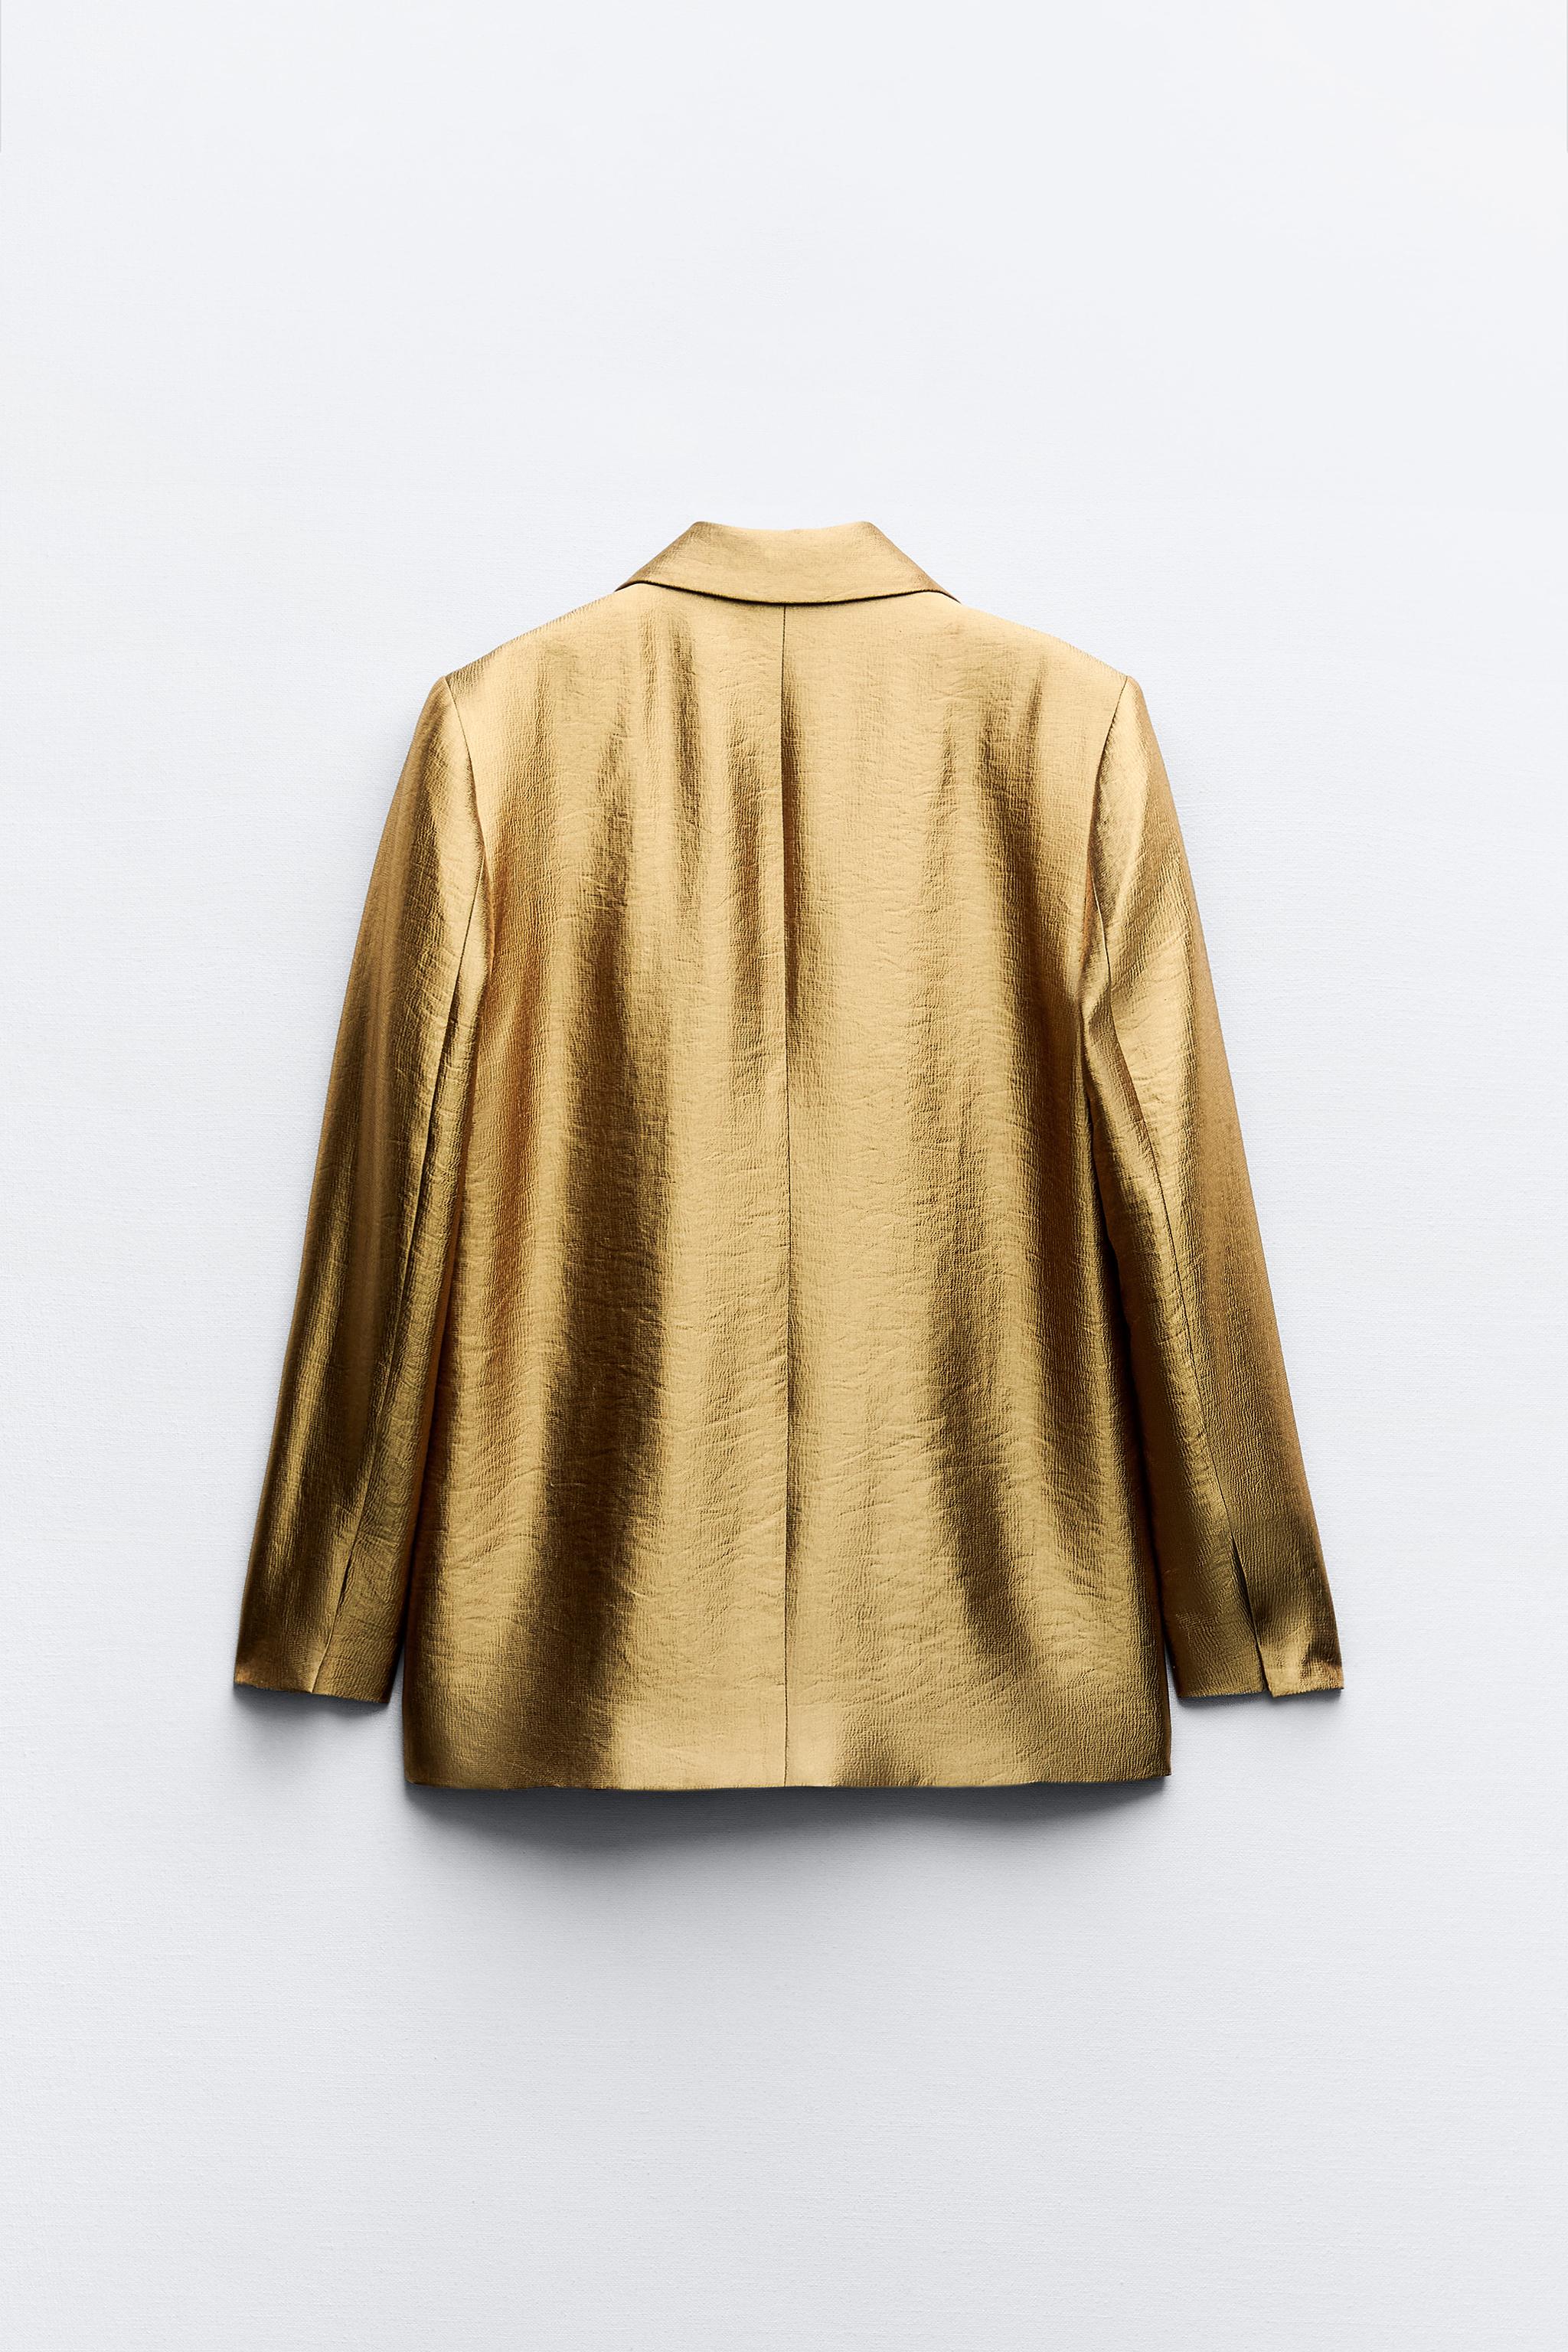 Zara dice que así se lleva la blazer con botones dorados que todas las  editoras de moda tienen